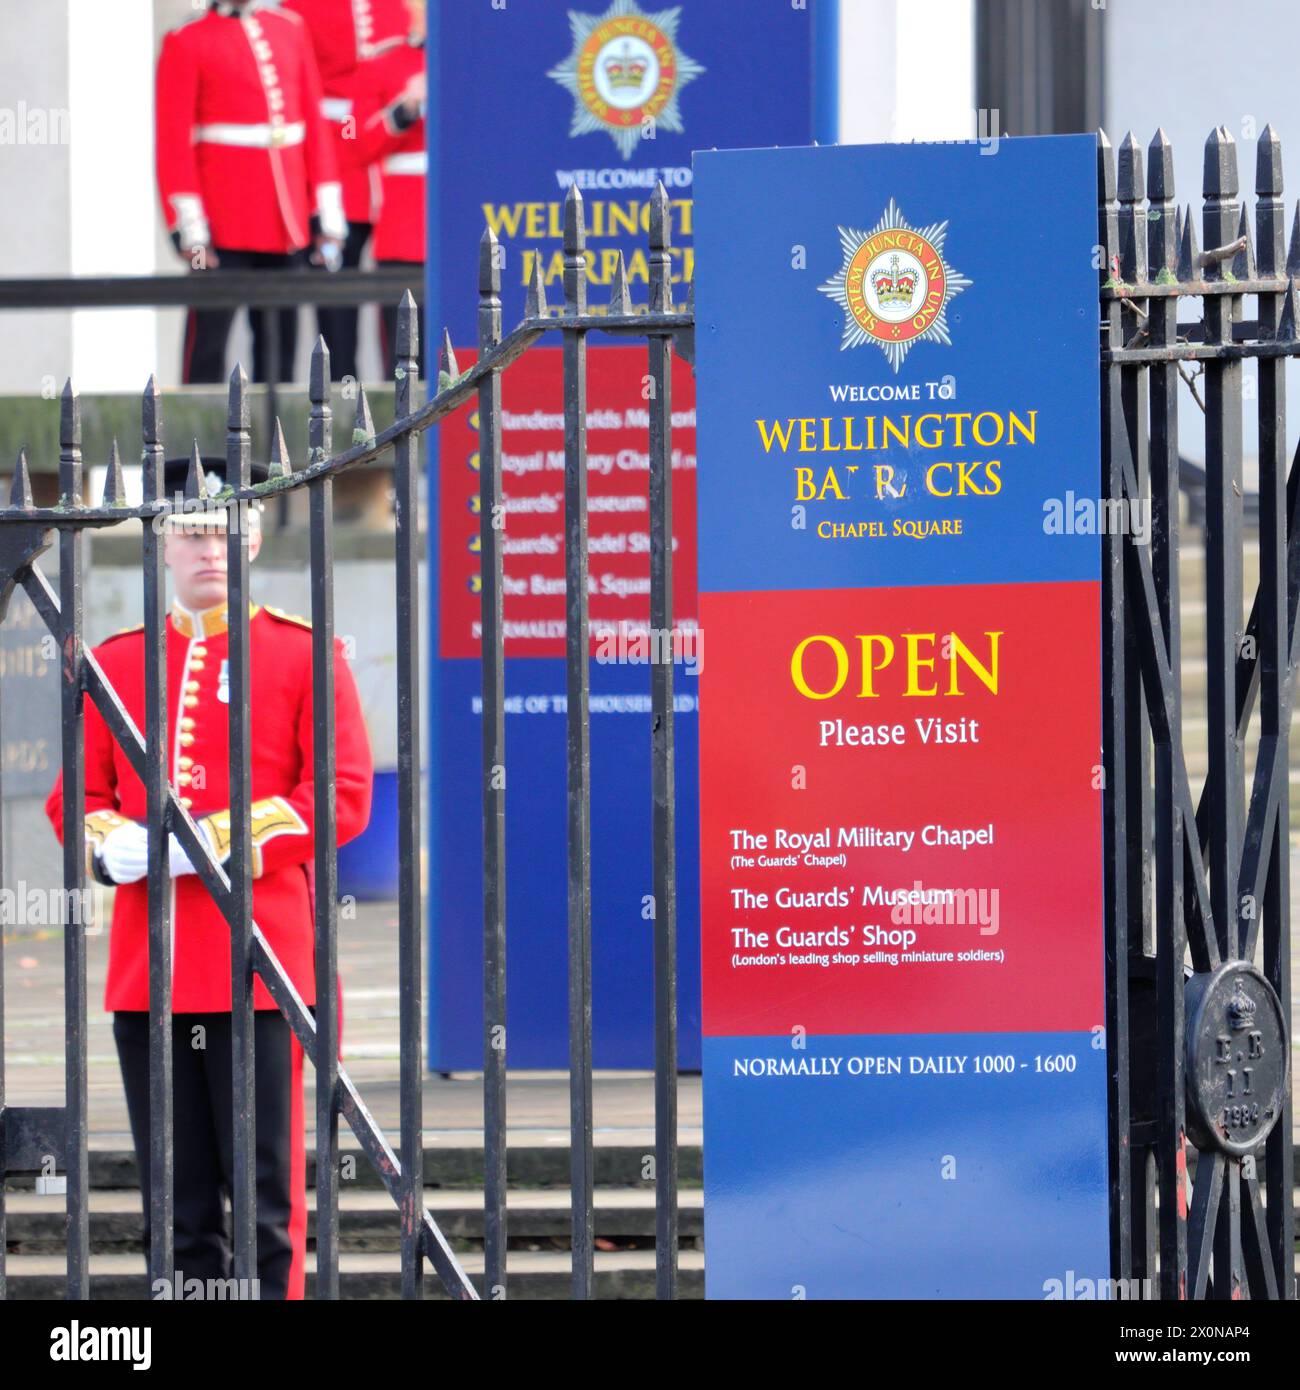 Wellington Barracks, eine Militärkaserne in Westminster, Zentrum von London, für die Bataillone der Foot Guards, die öffentliche Aufgaben in diesem Gebiet wahrnehmen Stockfoto